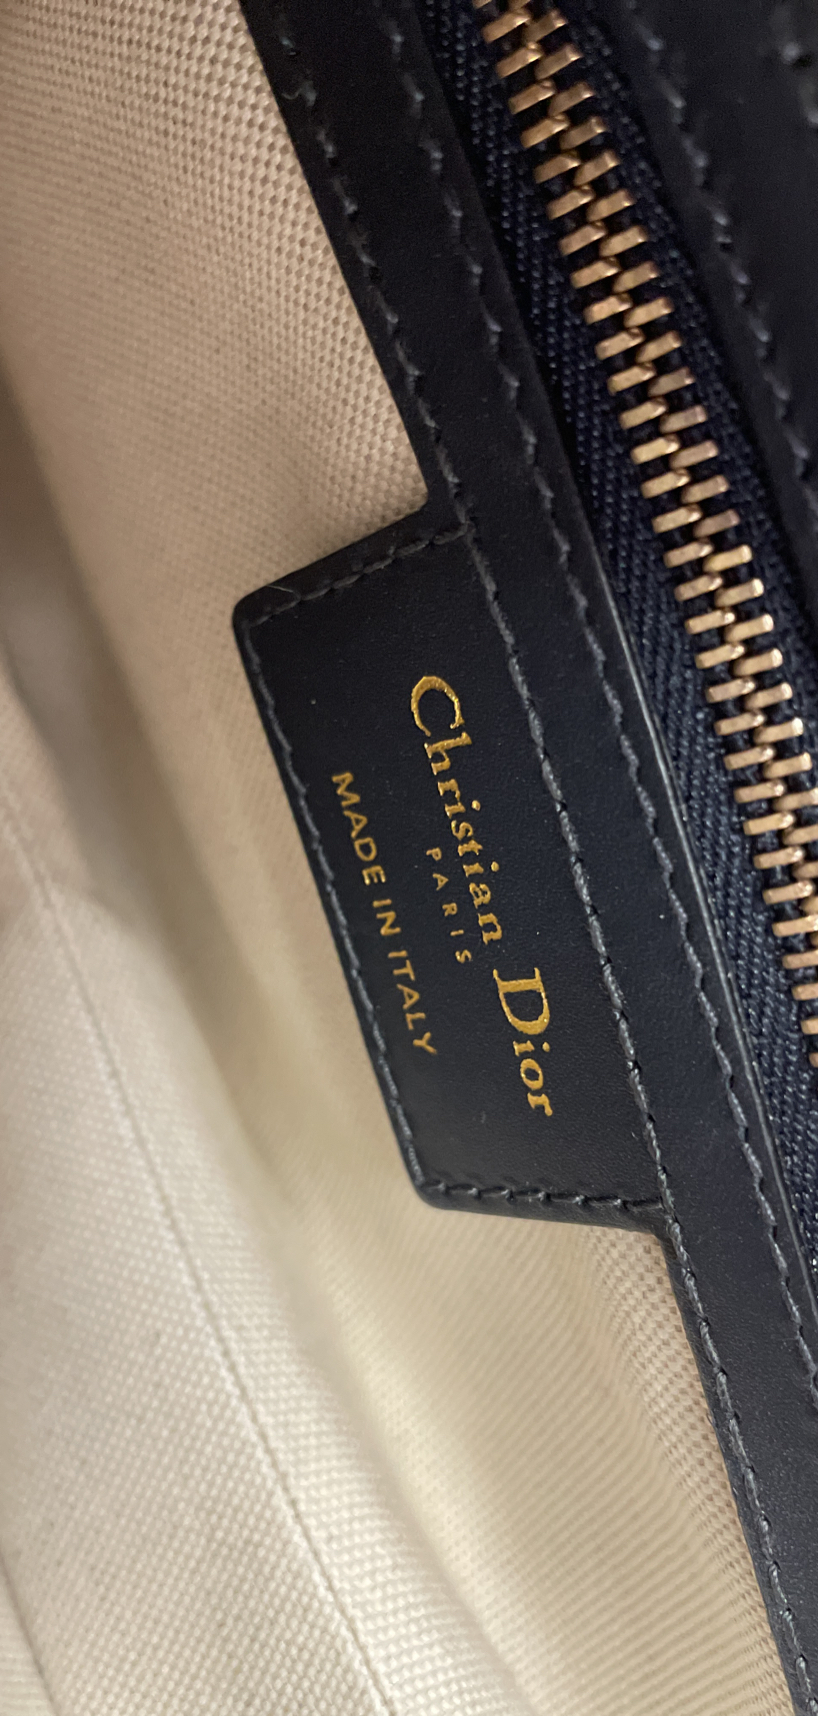 Christian Dior Micro Diorissimo Speedy Bag